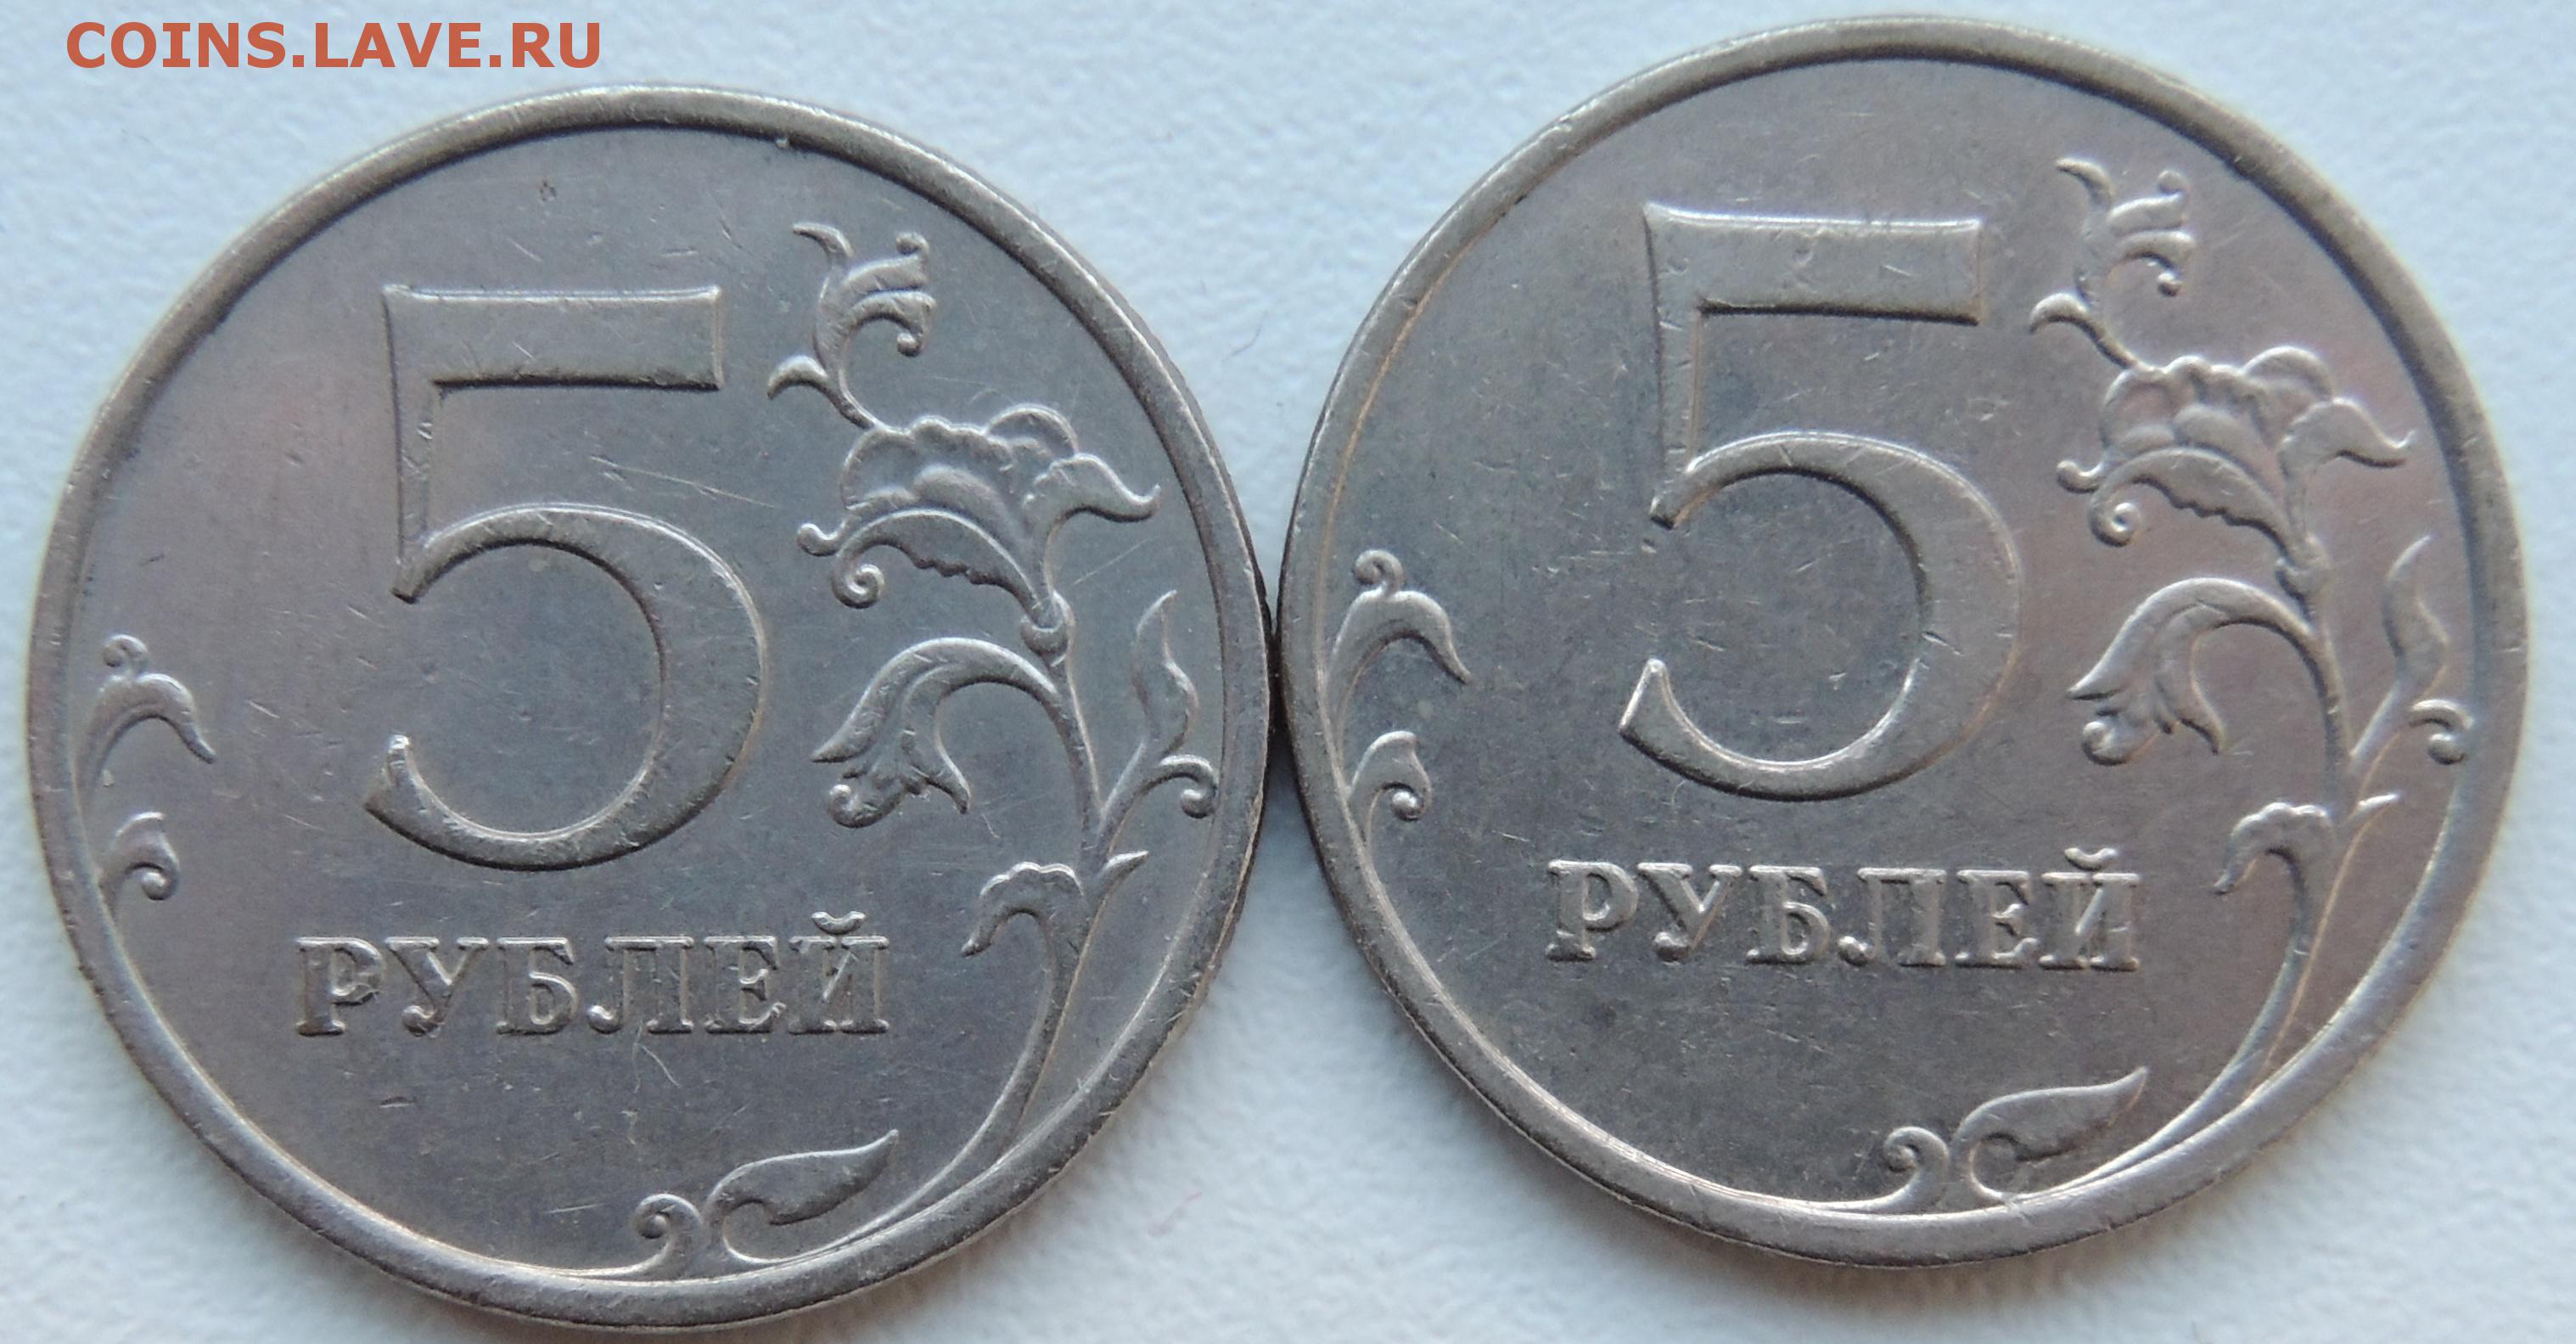 38 5 в рублях. Монета с одинаковыми сторонами. Монета с двумя решками. Монета одинаковая с двух сторон. Монетка с двумя одинаковыми сторонами.